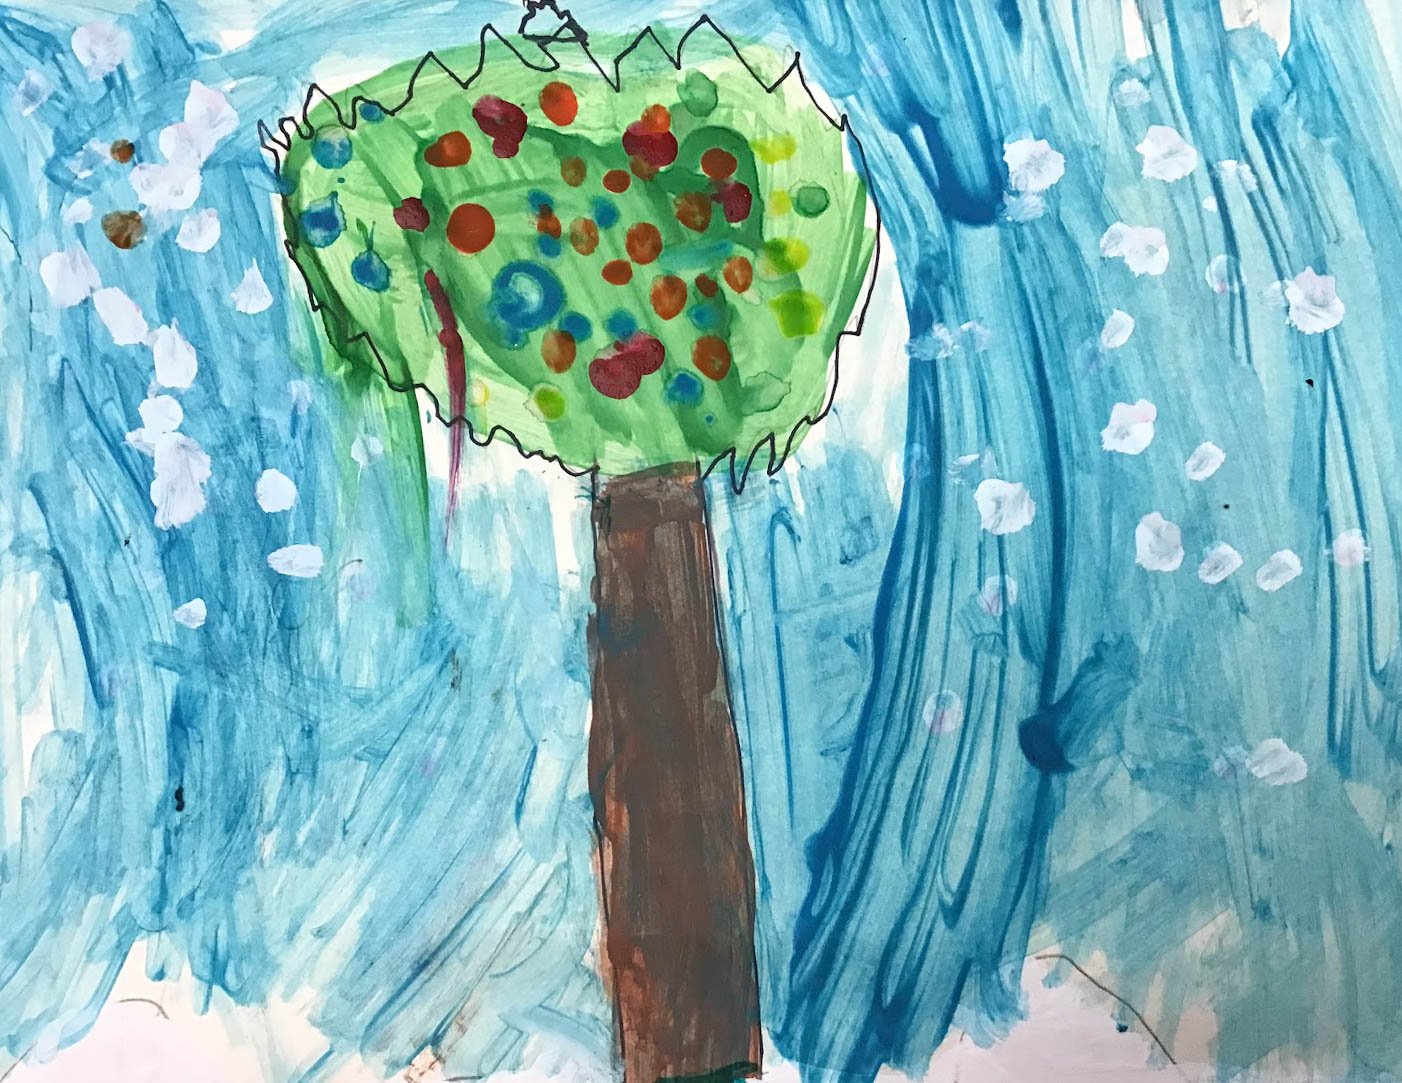 Artwork by Jaden, Age 9 from Burtts Corner